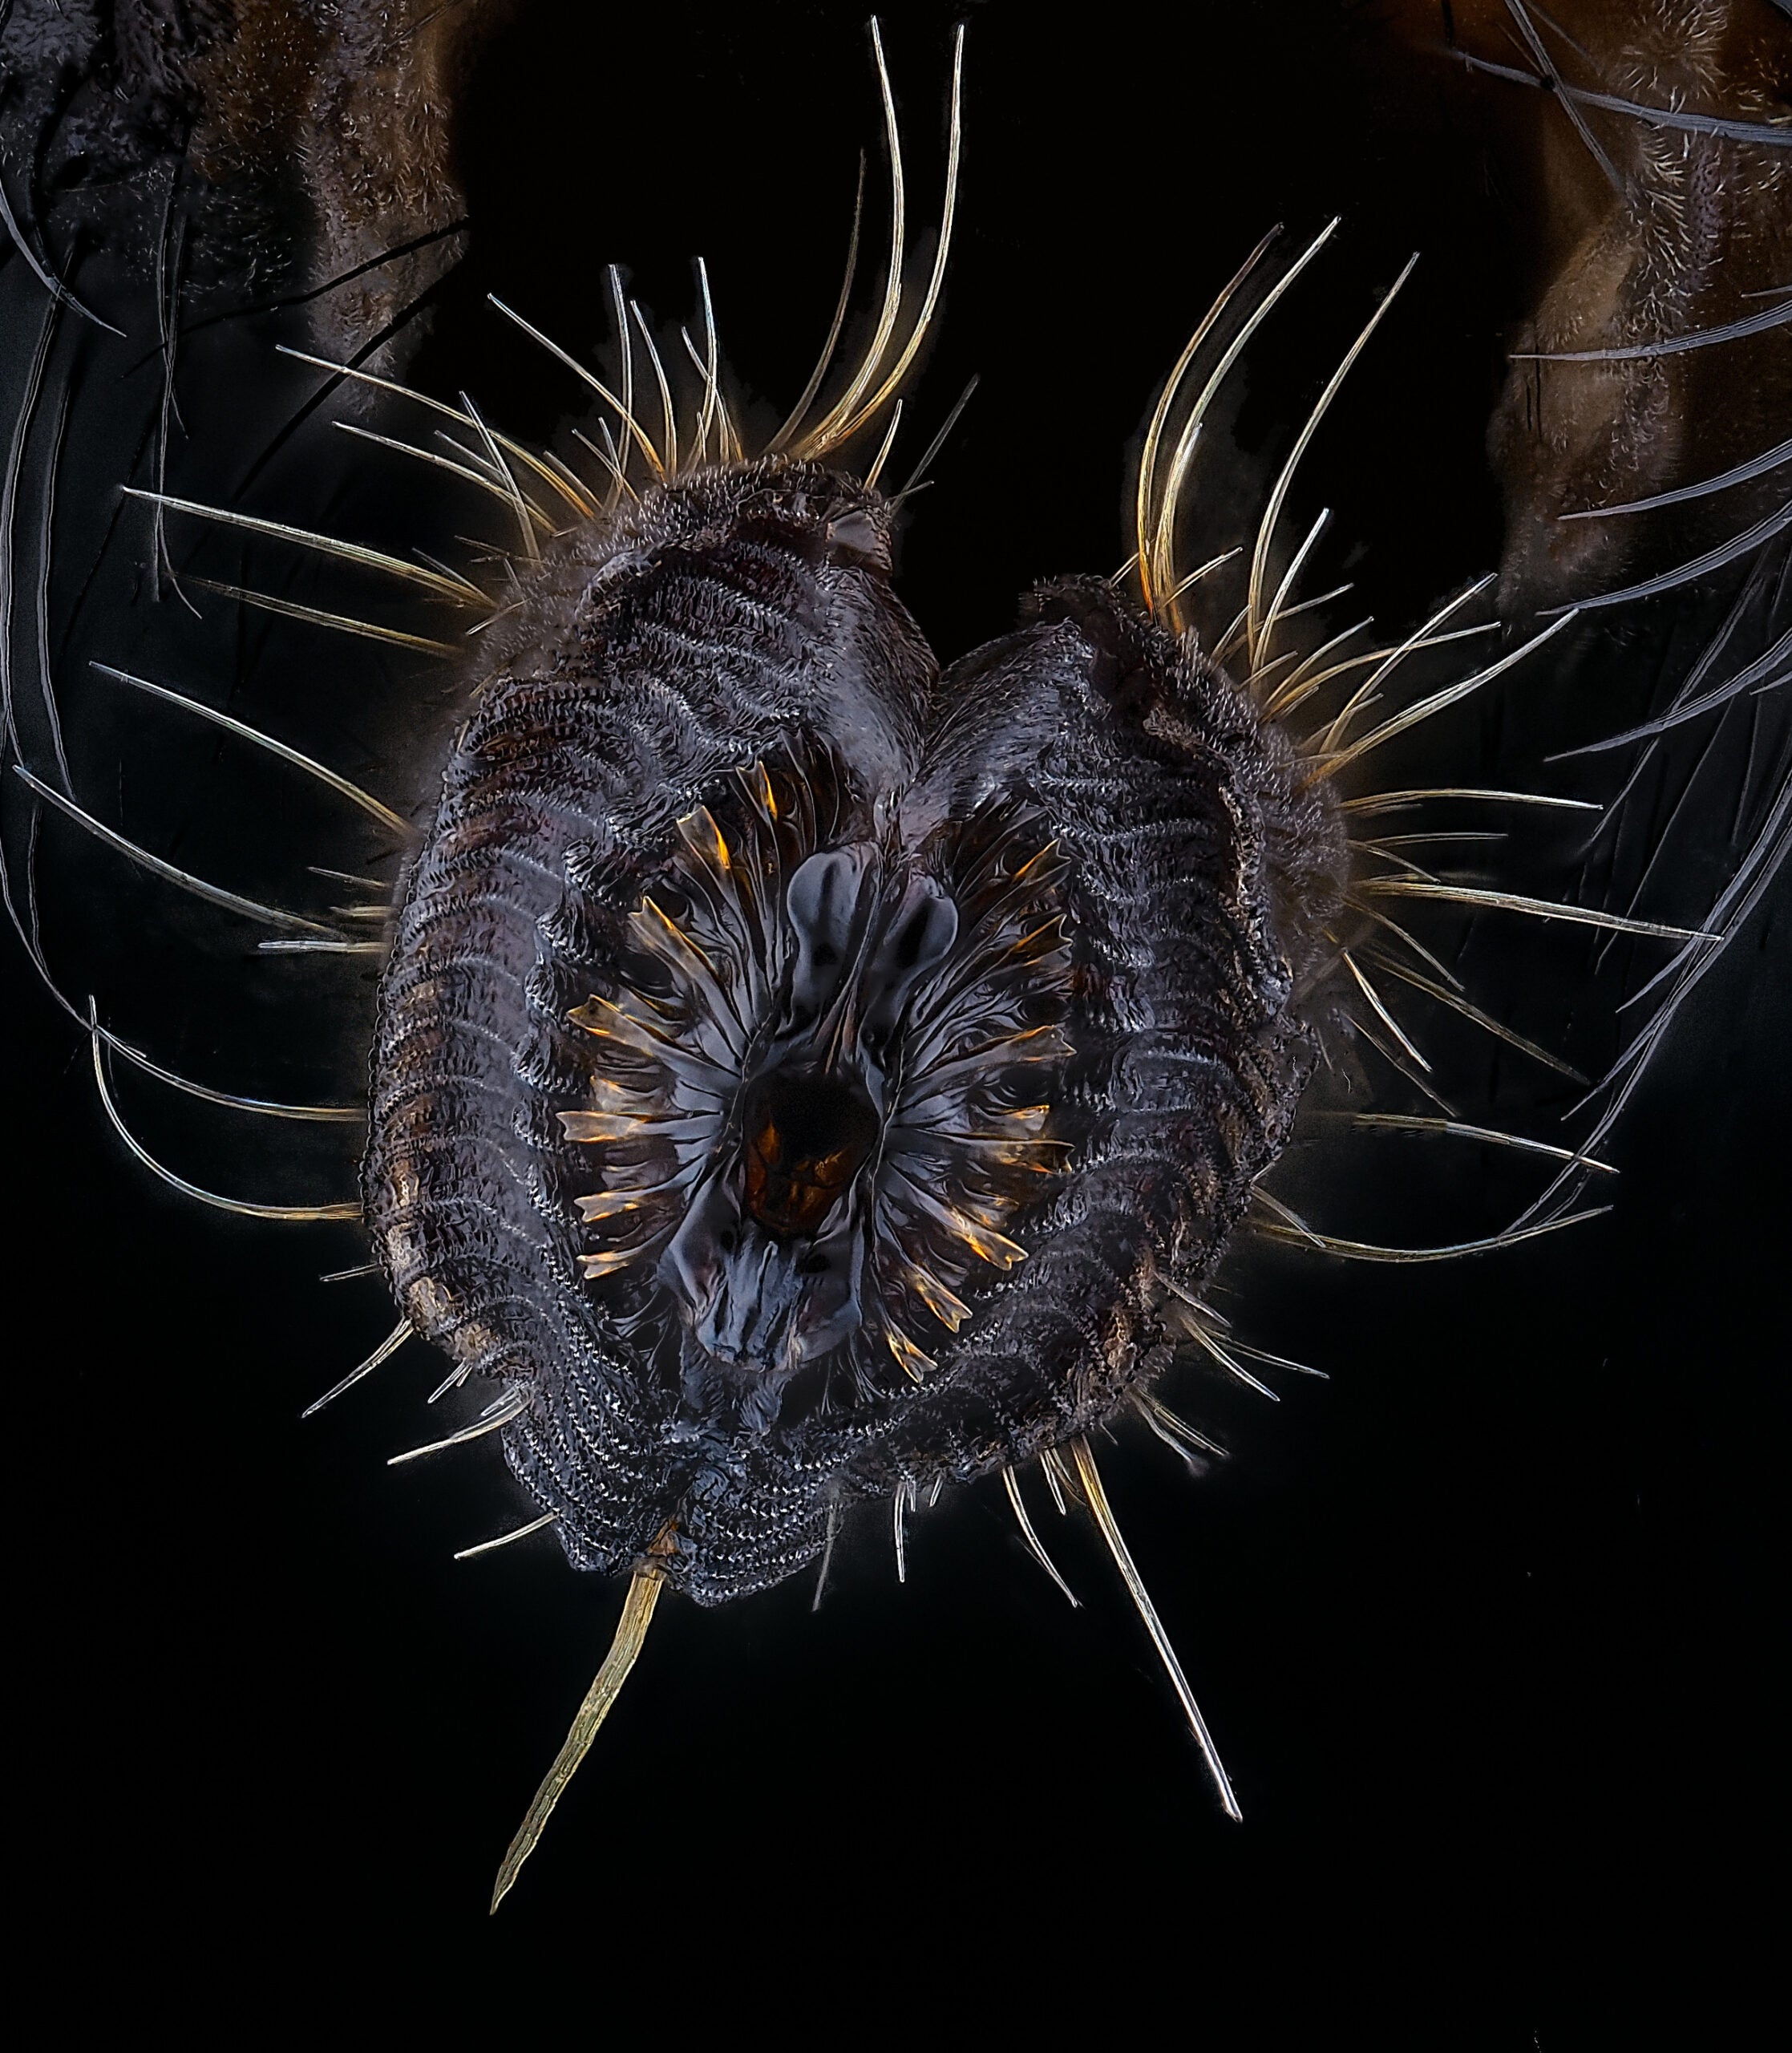 Proboscis of a housefly